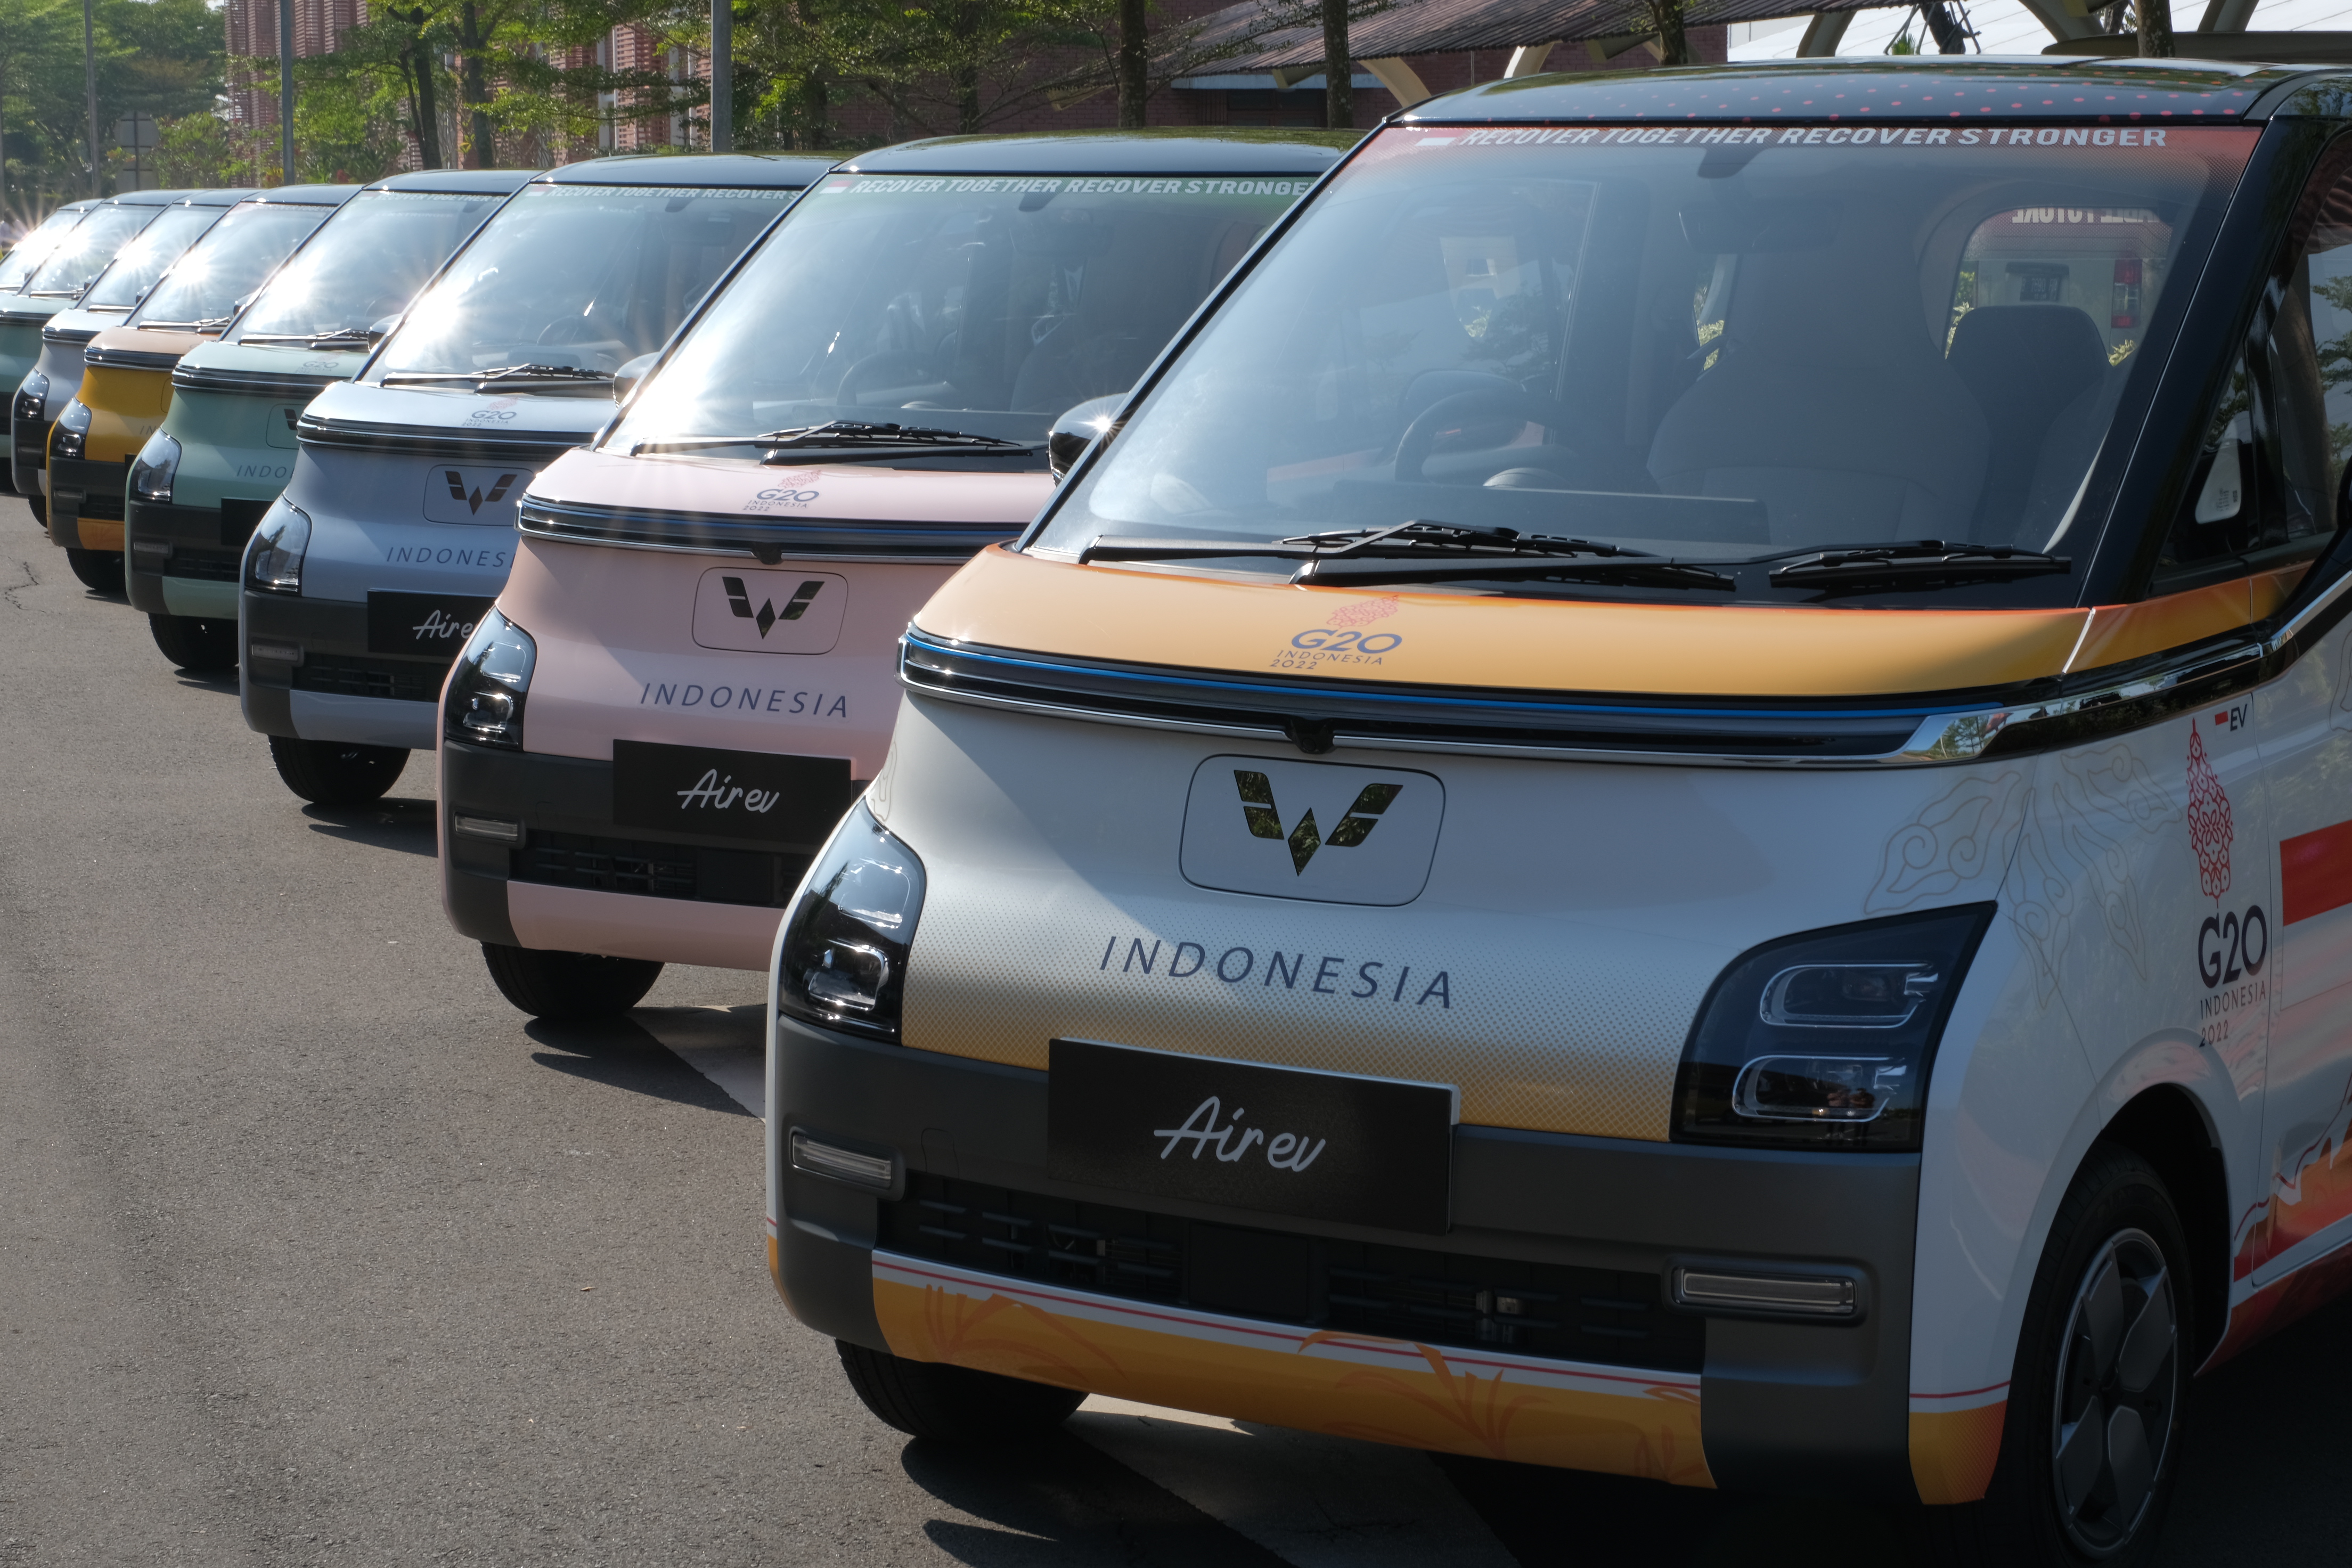 Image Kendaraan Listrik Wuling Pertama di Indonesia, Air ev, Resmi Diproduksi di Cikarang